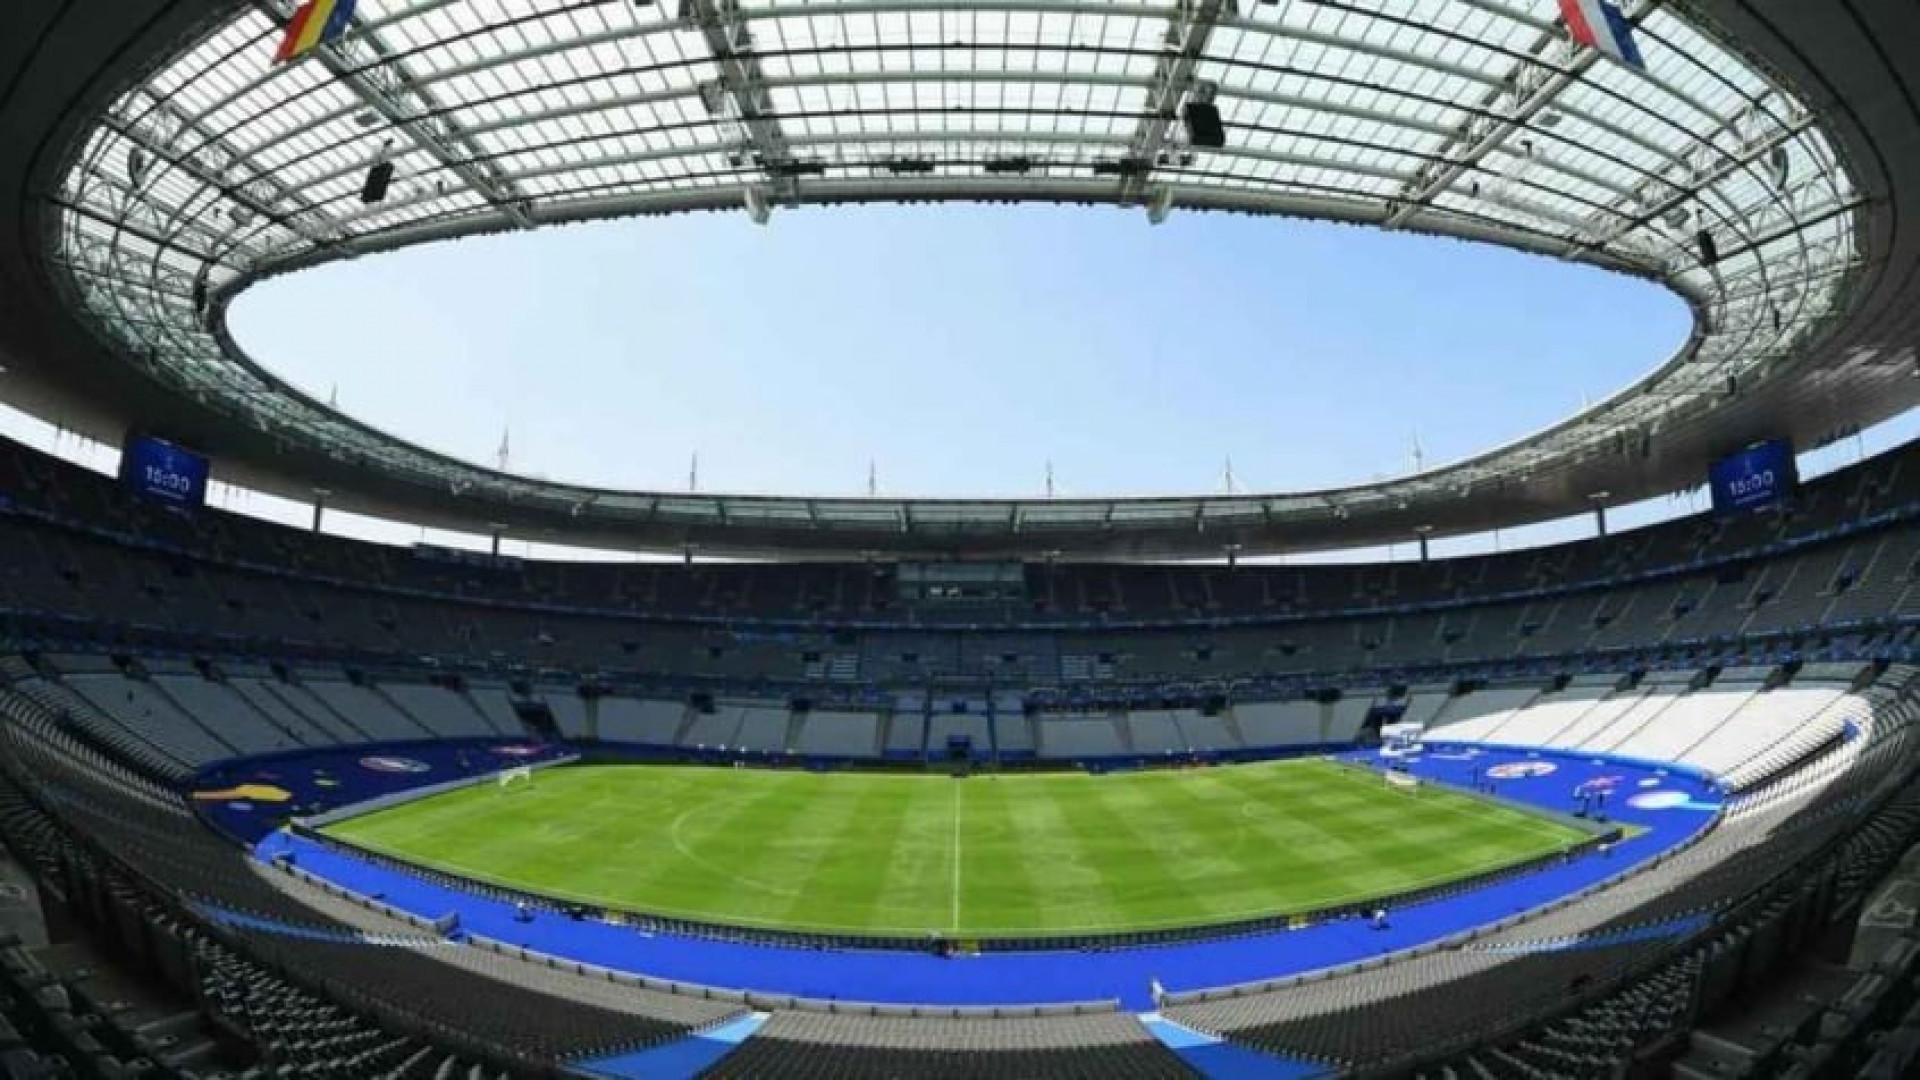 Stade de France pode ser a nova casa do Paris Saint-Germain - Divulgação/UEFA